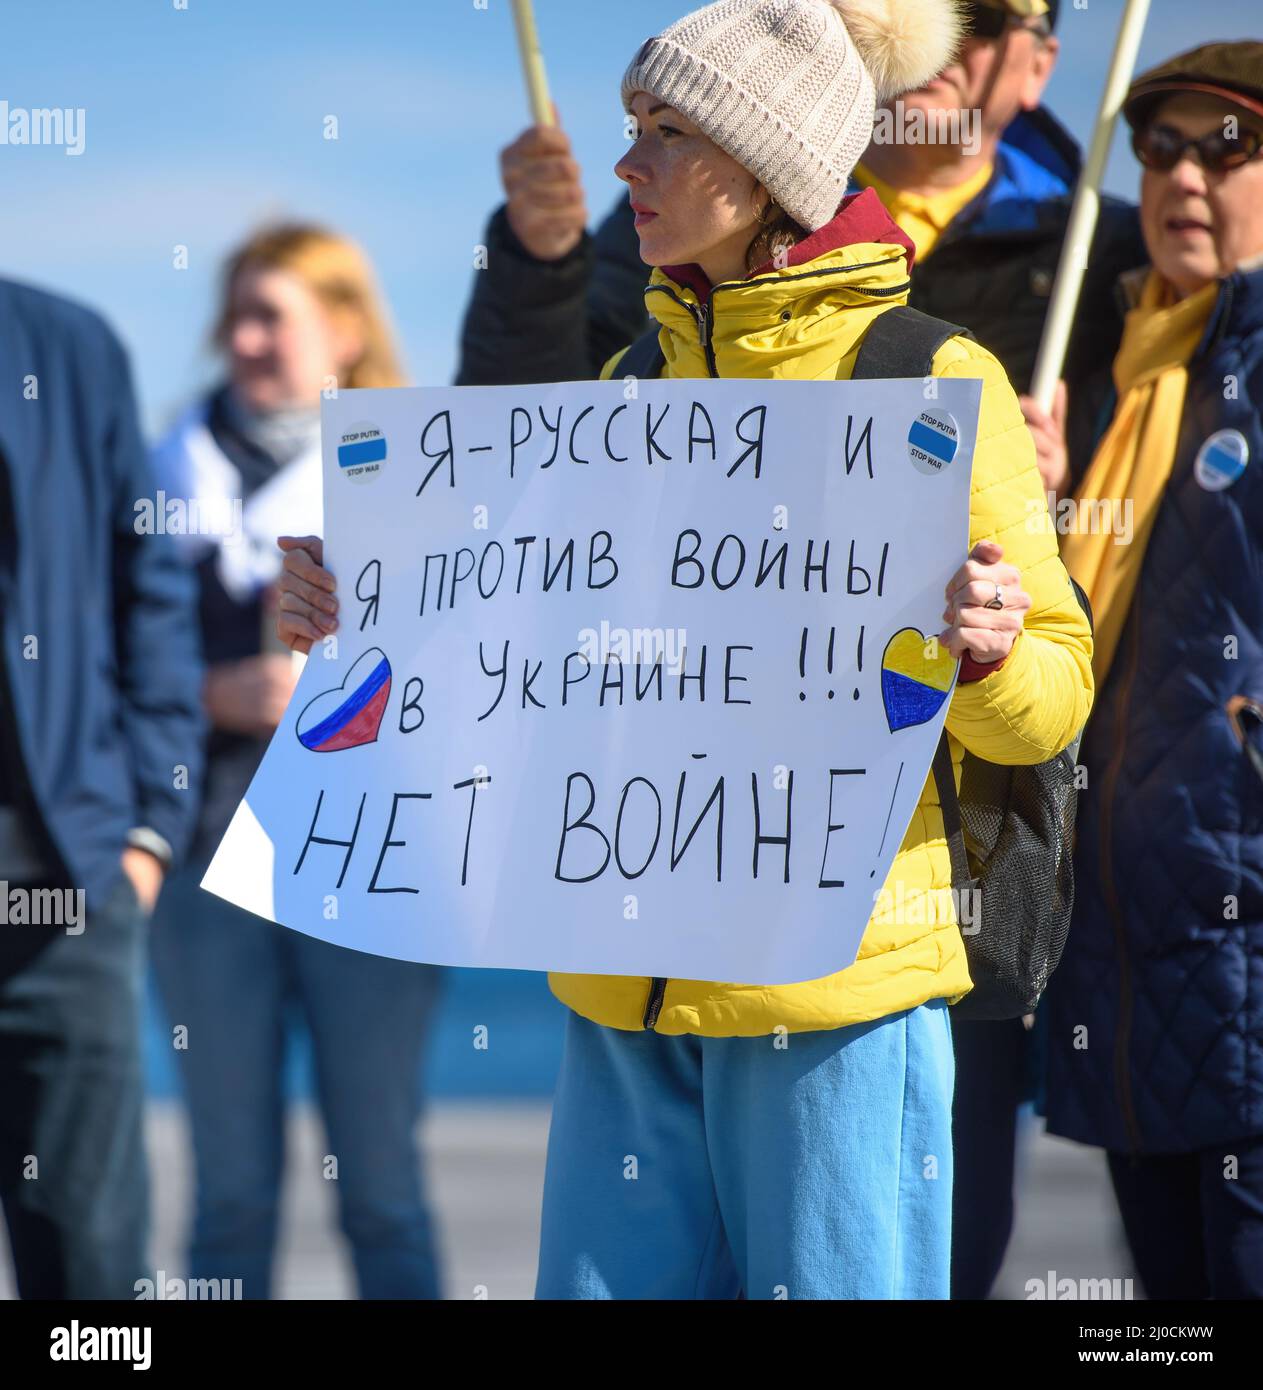 LIMASSOL, CHIPRE - 13 DE MARZO de 2022: Mujer activista protesta contra la invasión rusa de Ucrania con el signo “Soy ruso y estoy en contra de la guerra en Ucrania” Foto de stock